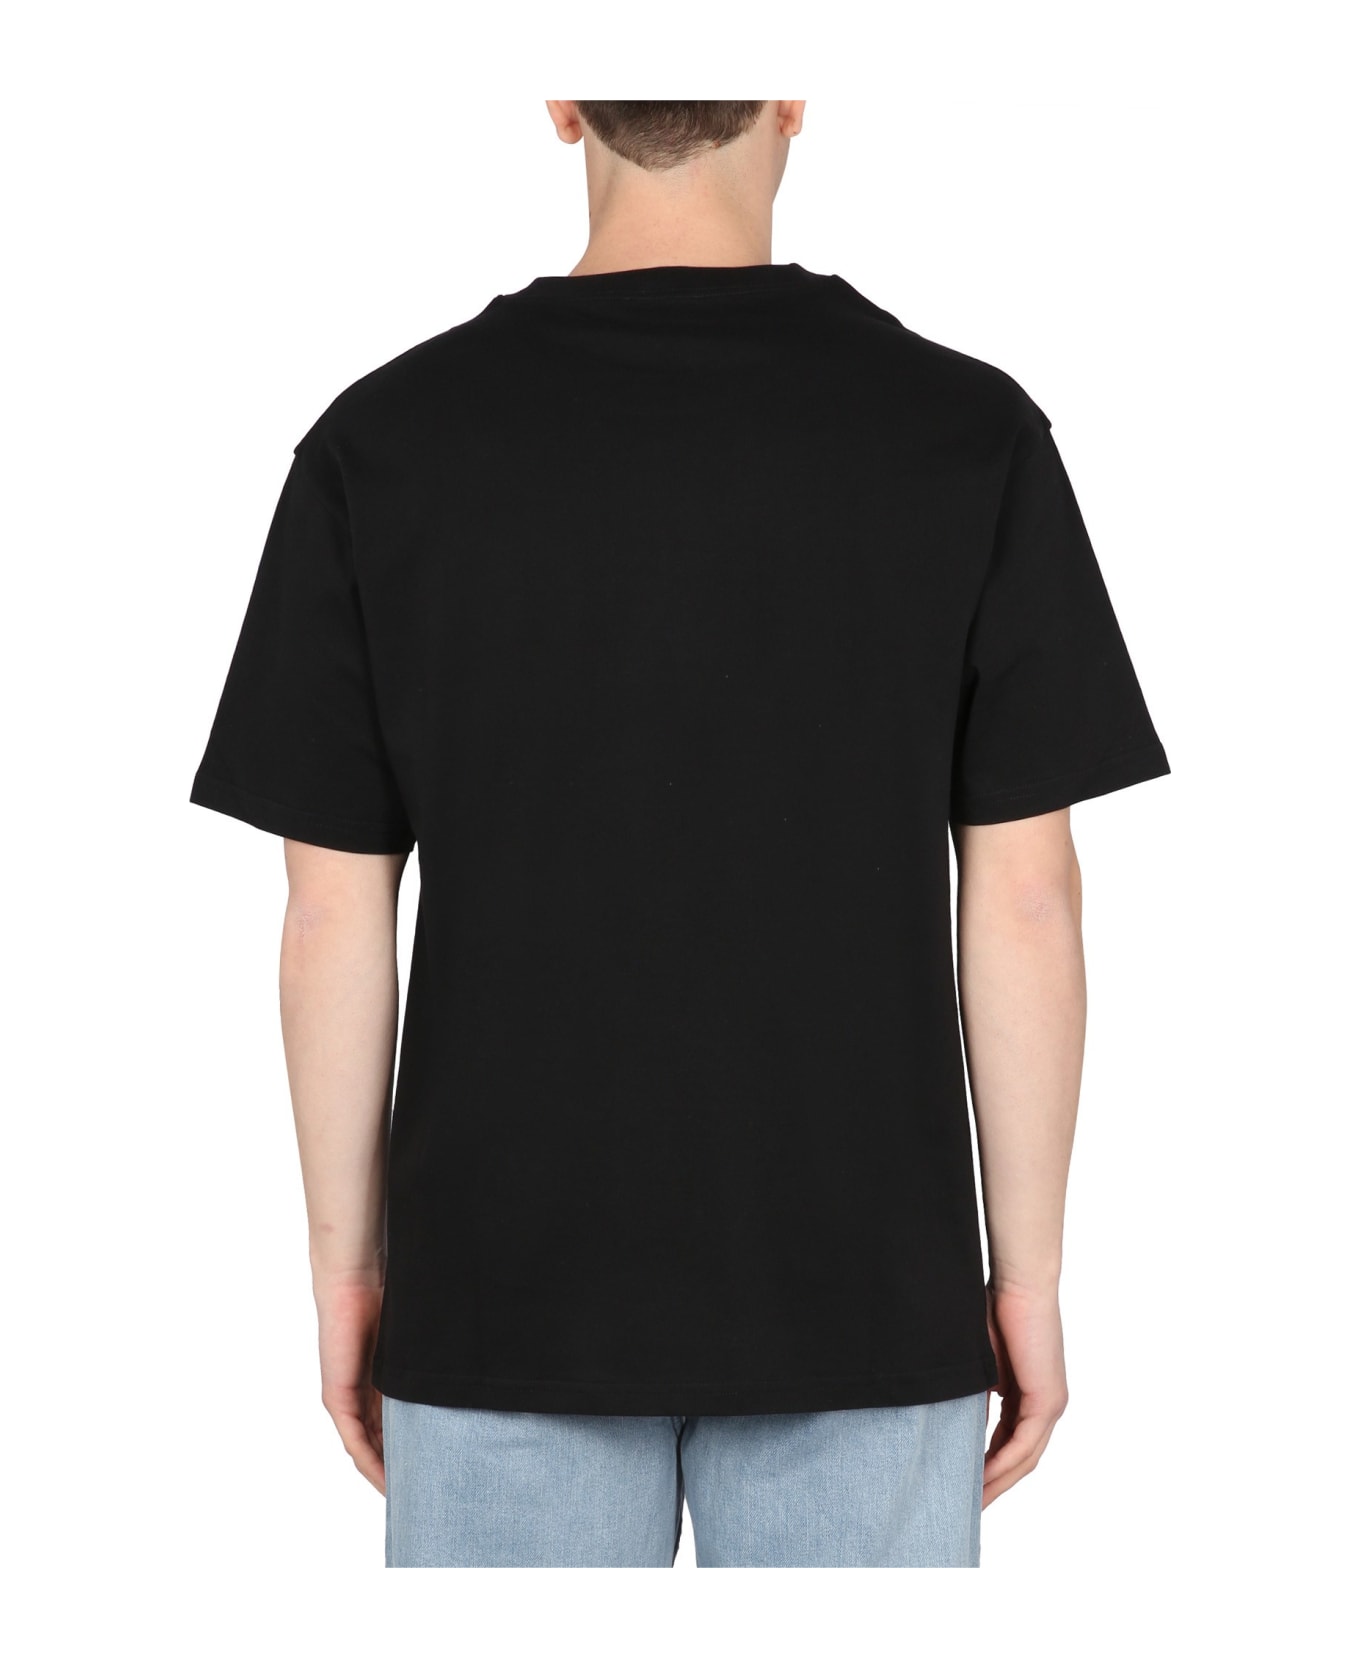 A.P.C. Kyle T-shirt - Black